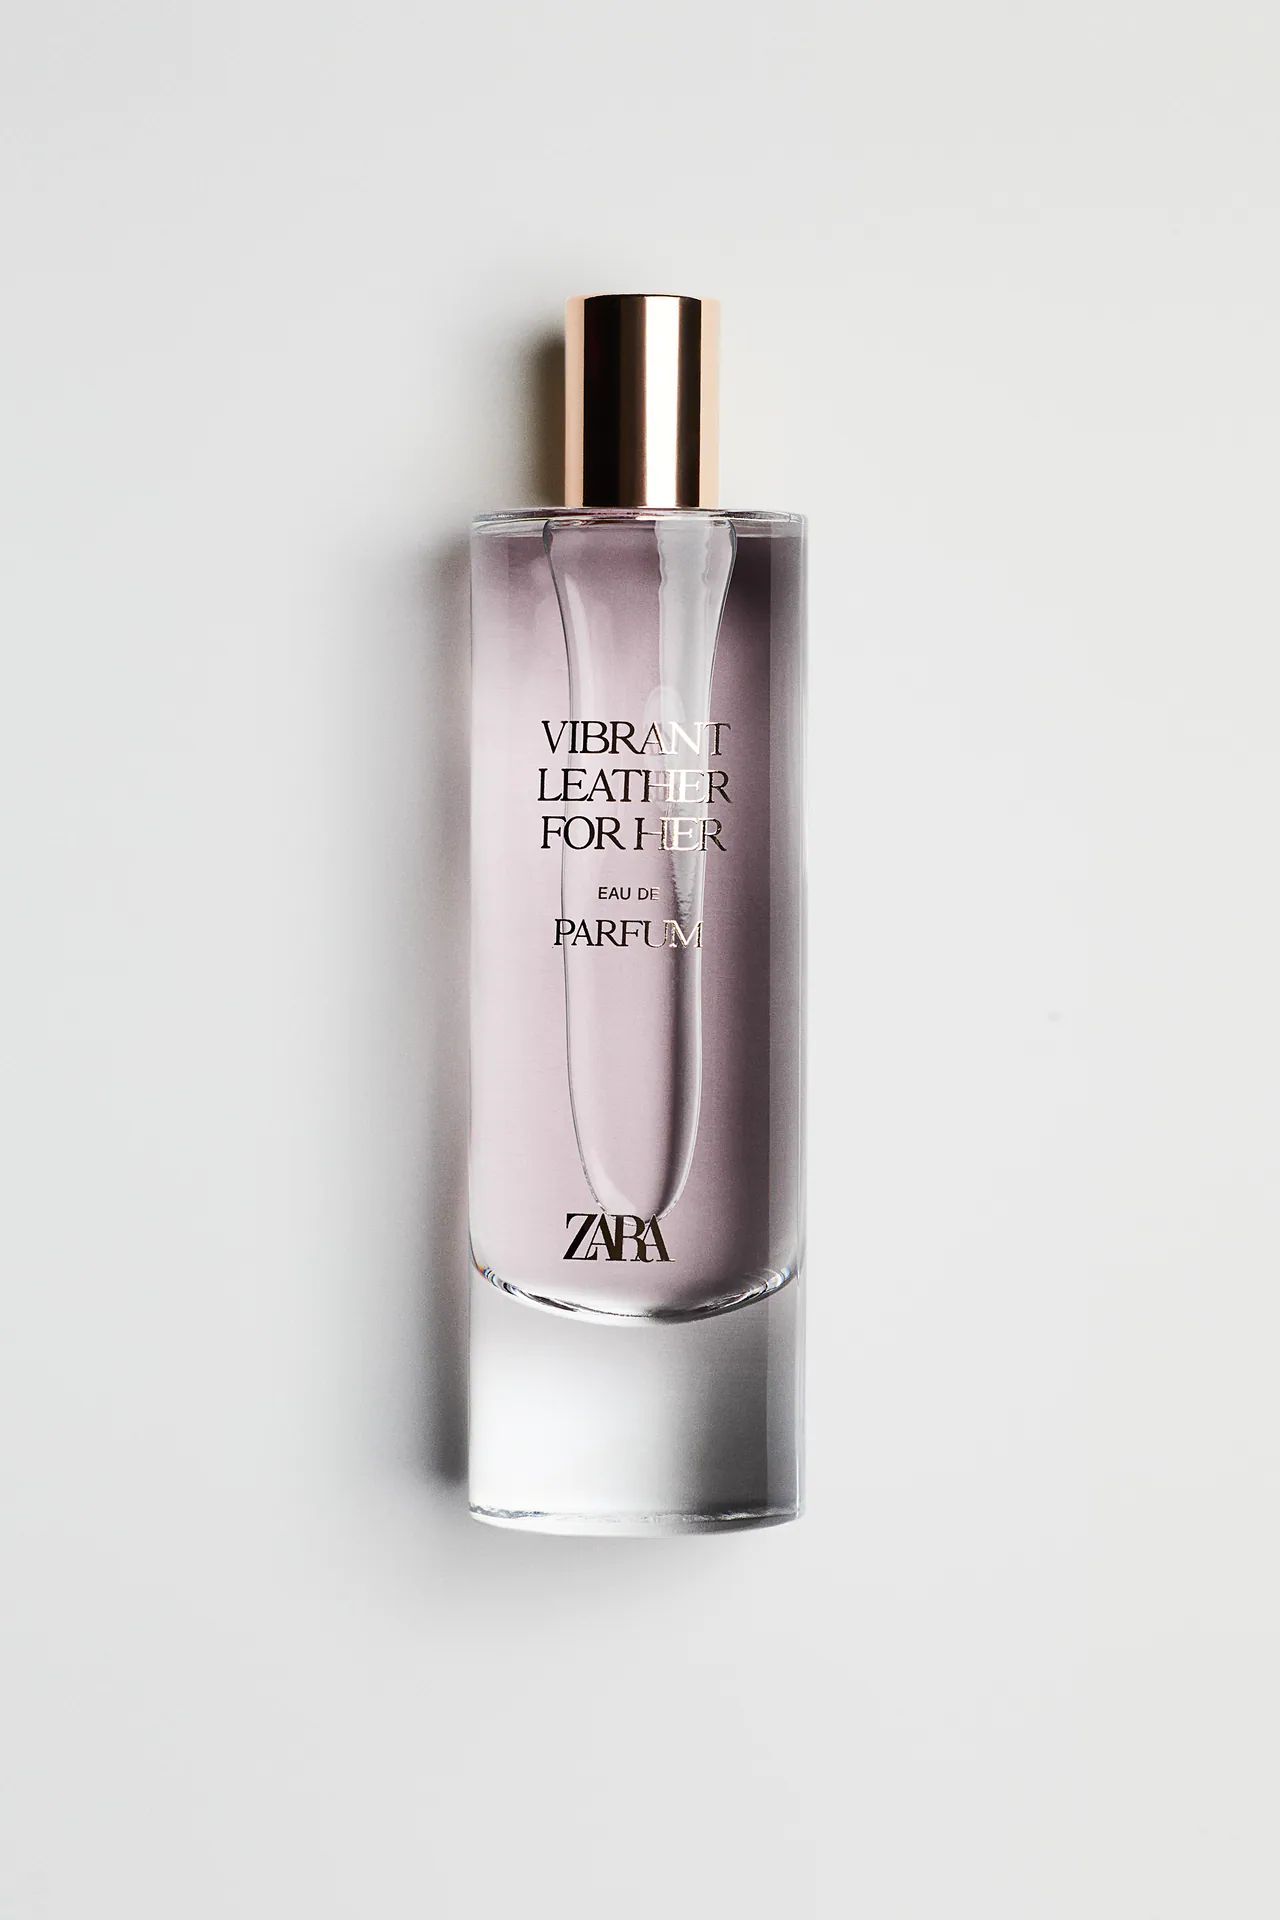 Vibrant Leather for Her 2021 Zara Parfum - ein neues Parfum für Frauen 2021